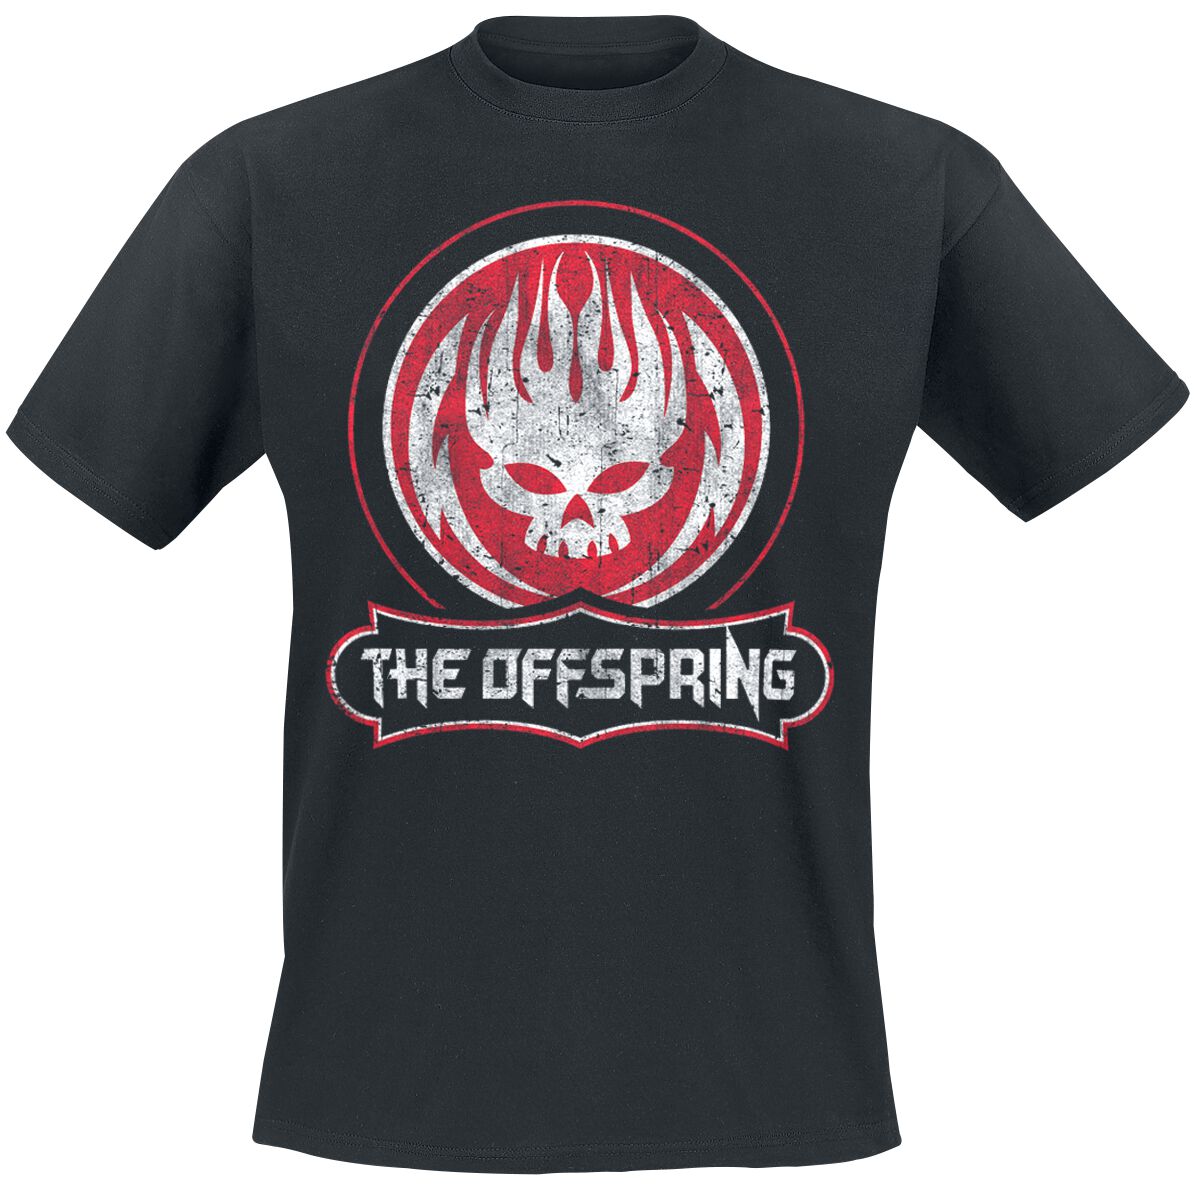 The Offspring T-Shirt - Distressed Skull - S bis XXL - für Männer - Größe XXL - schwarz  - Lizenziertes Merchandise!